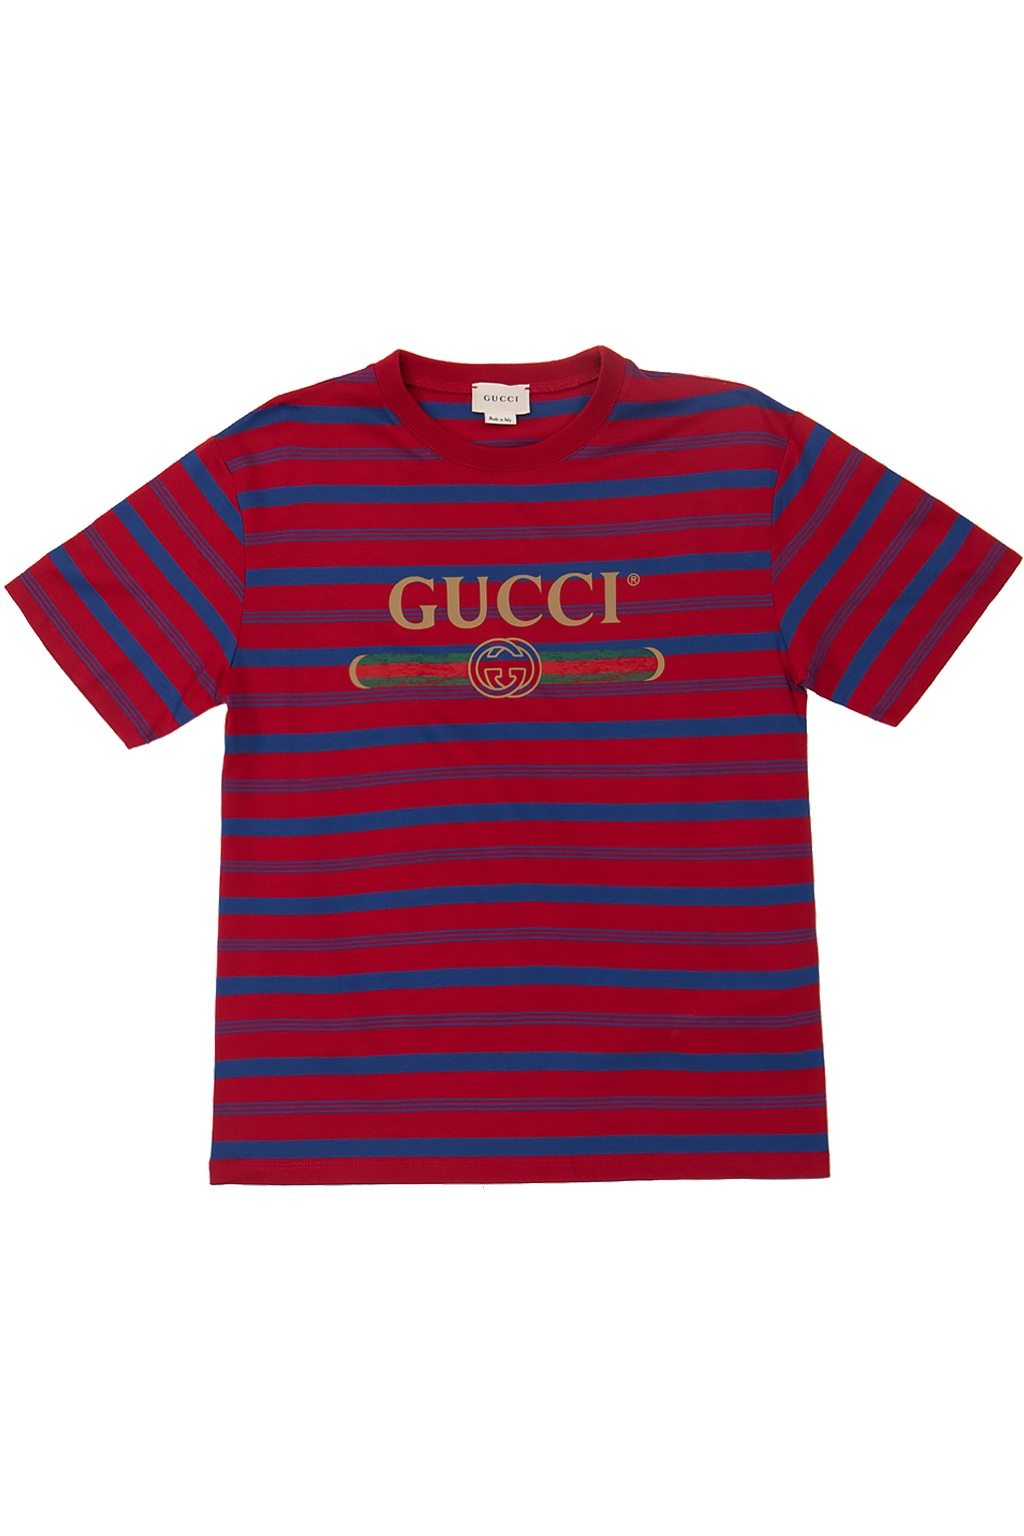 gucci tshirt for kids